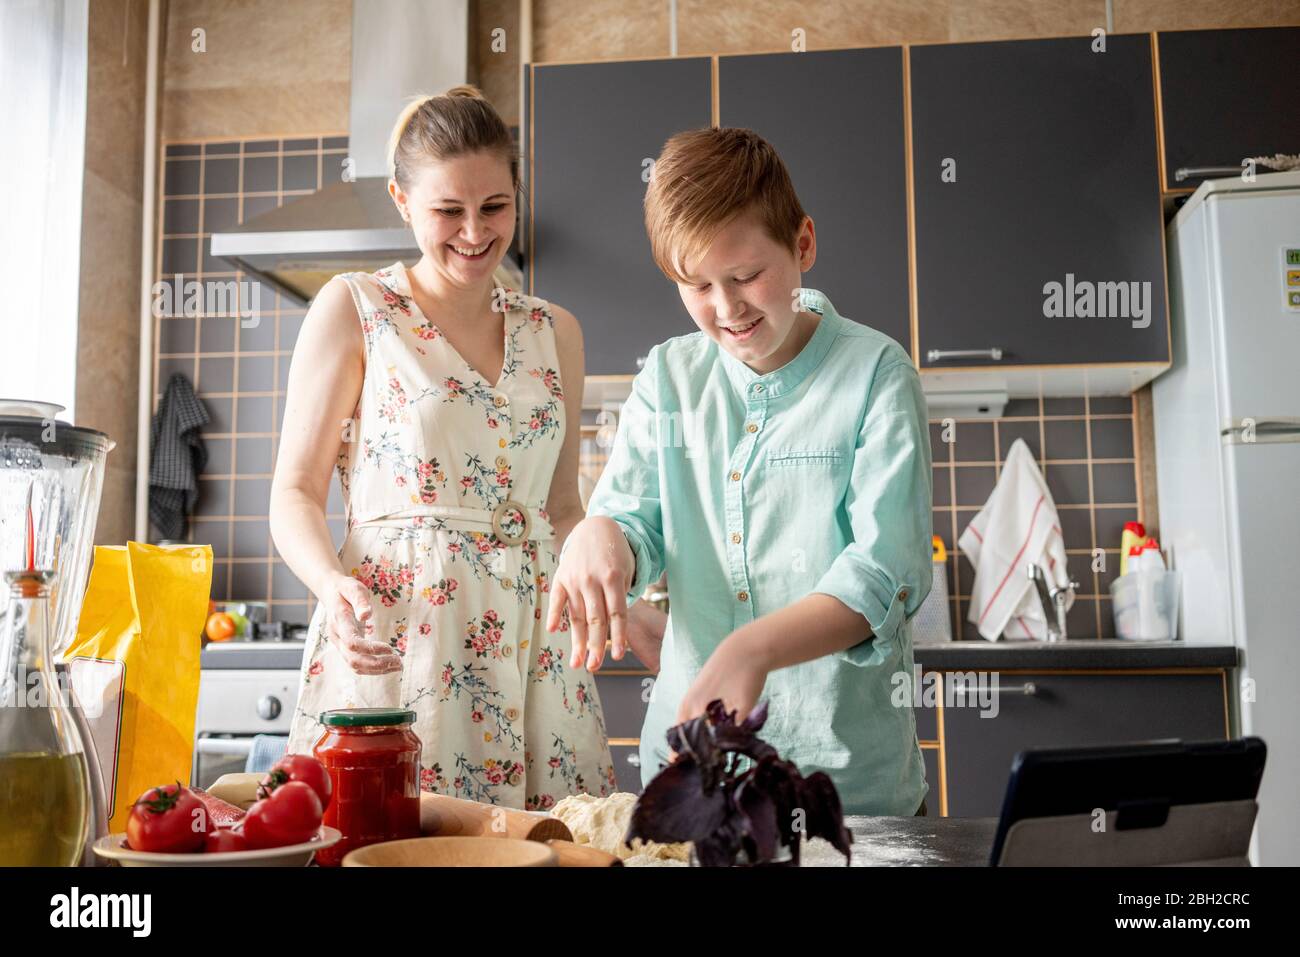 Lächelnder Junge kniet Teig in der Küche, während seine Mutter zuschaut Stockfoto